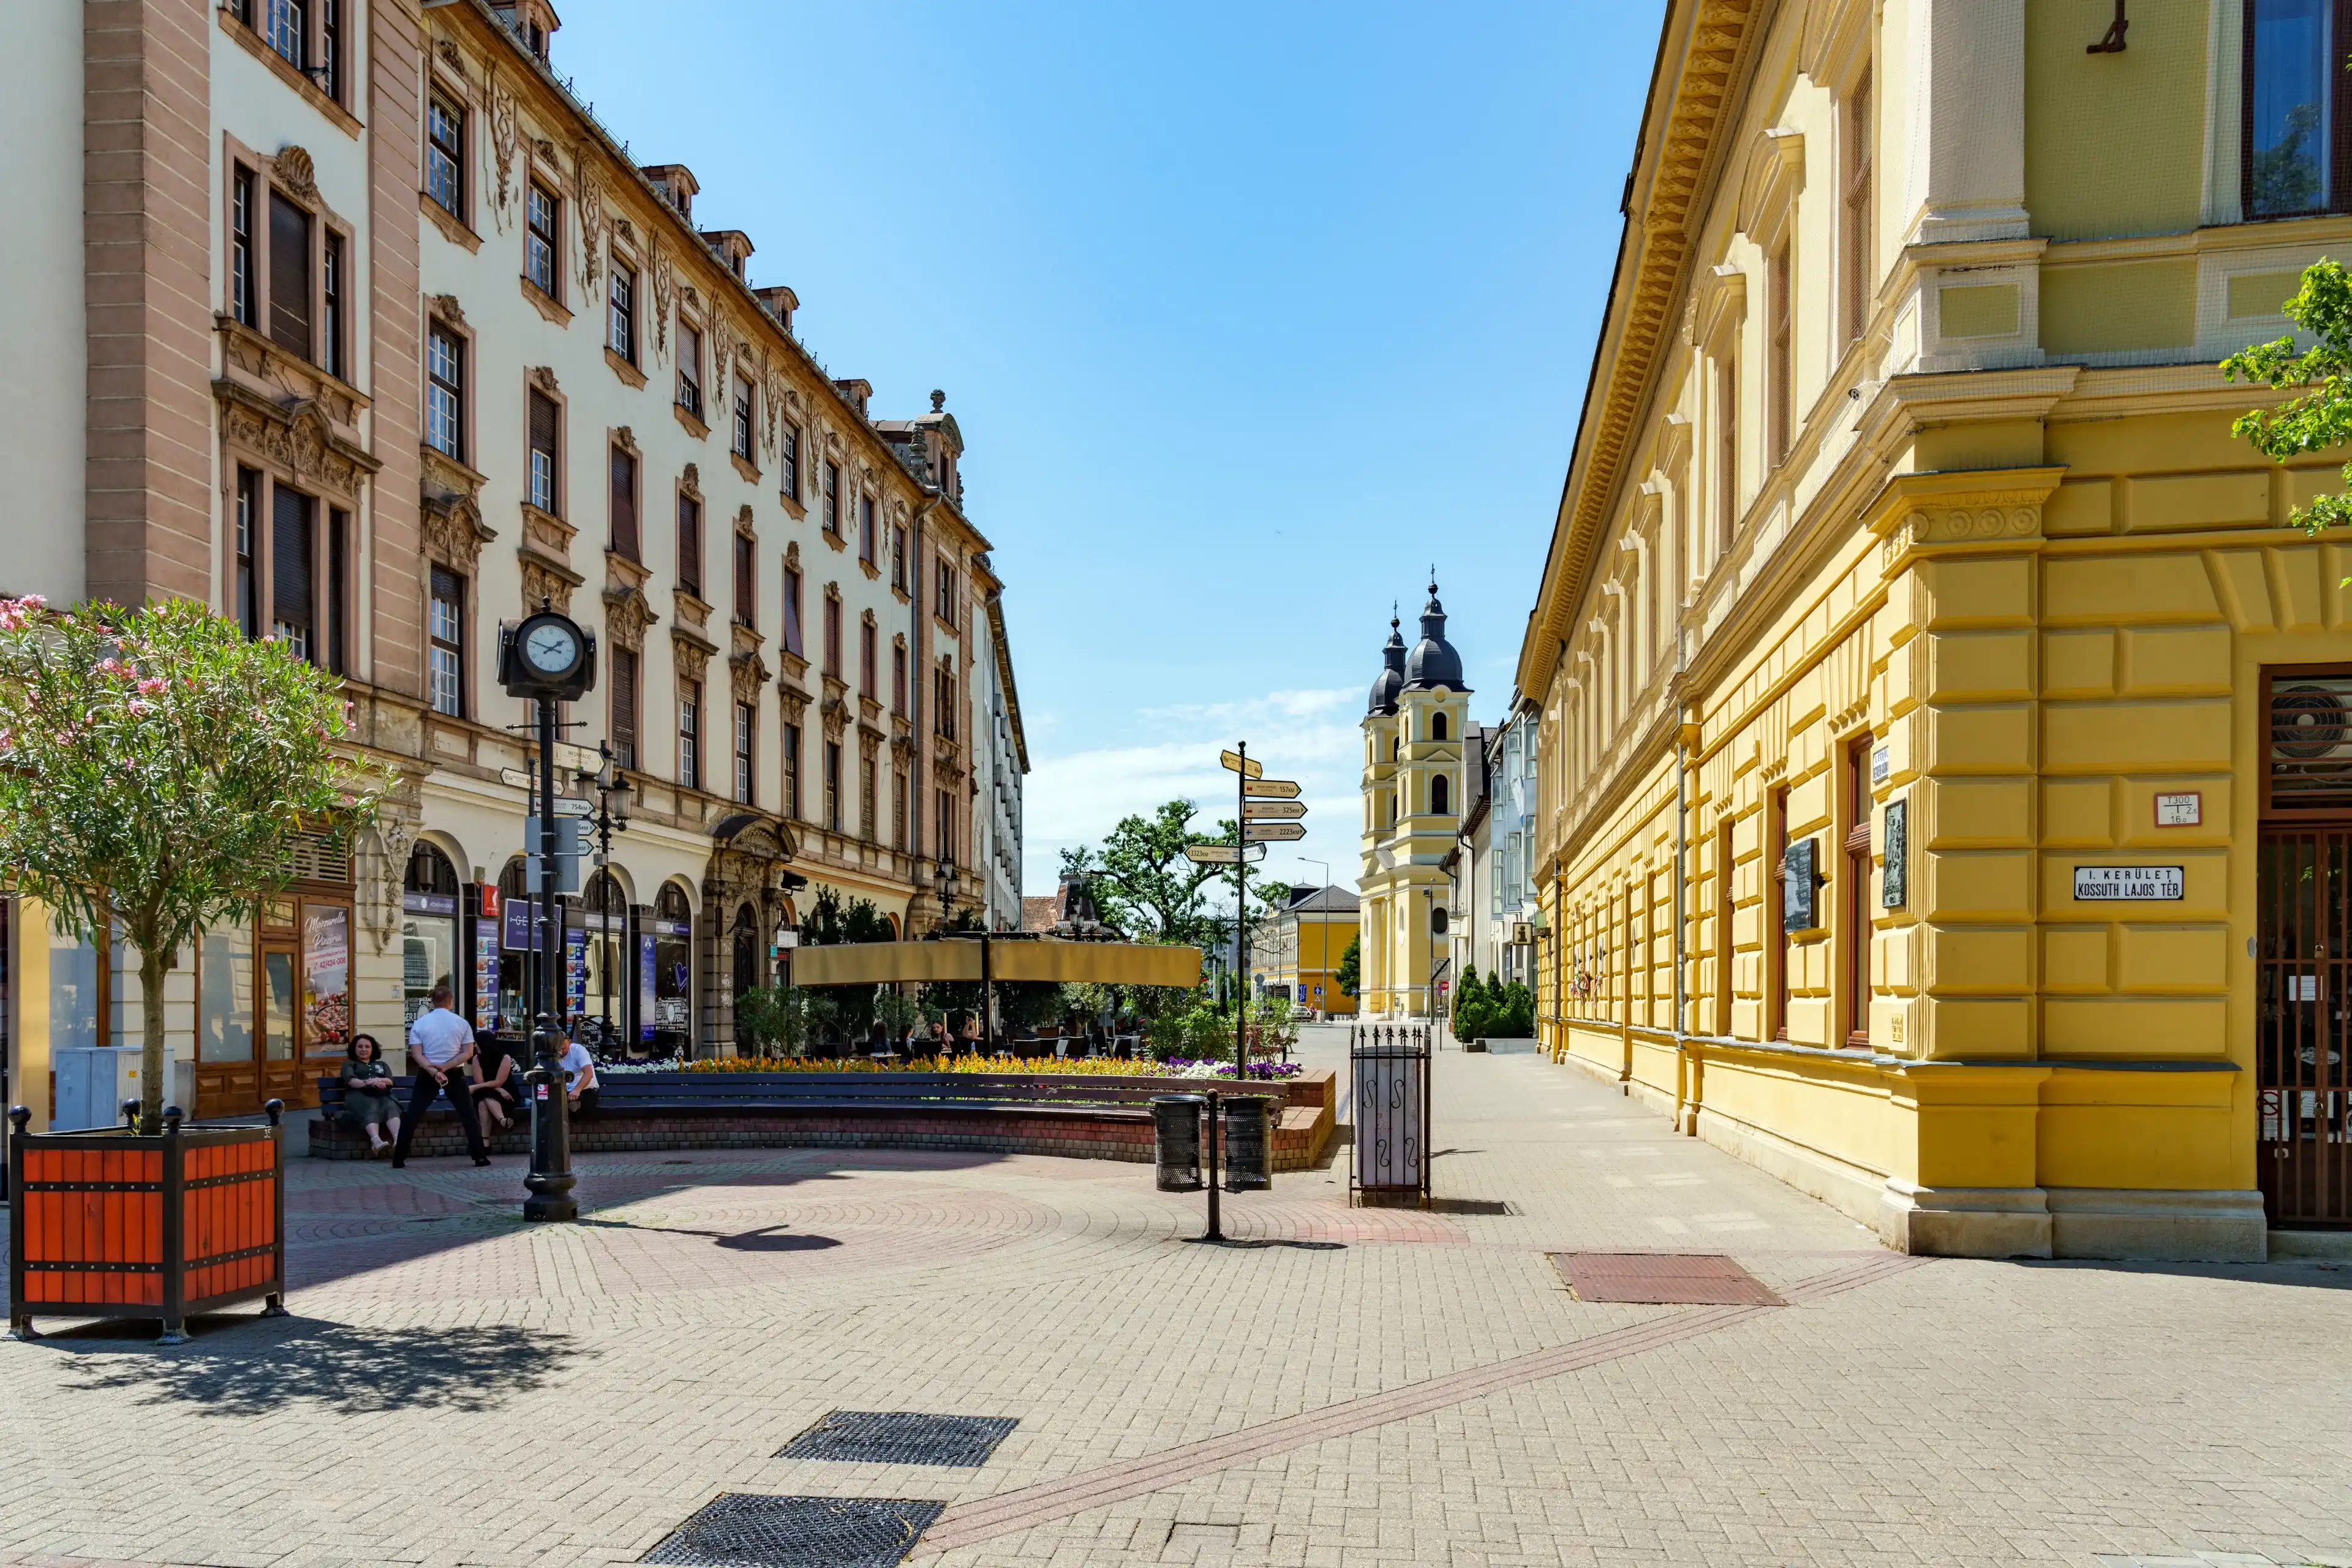 Szabolcs-Szatmár-Bereg hotels. Best hotels in Szabolcs-Szatmár-Bereg, Hungary